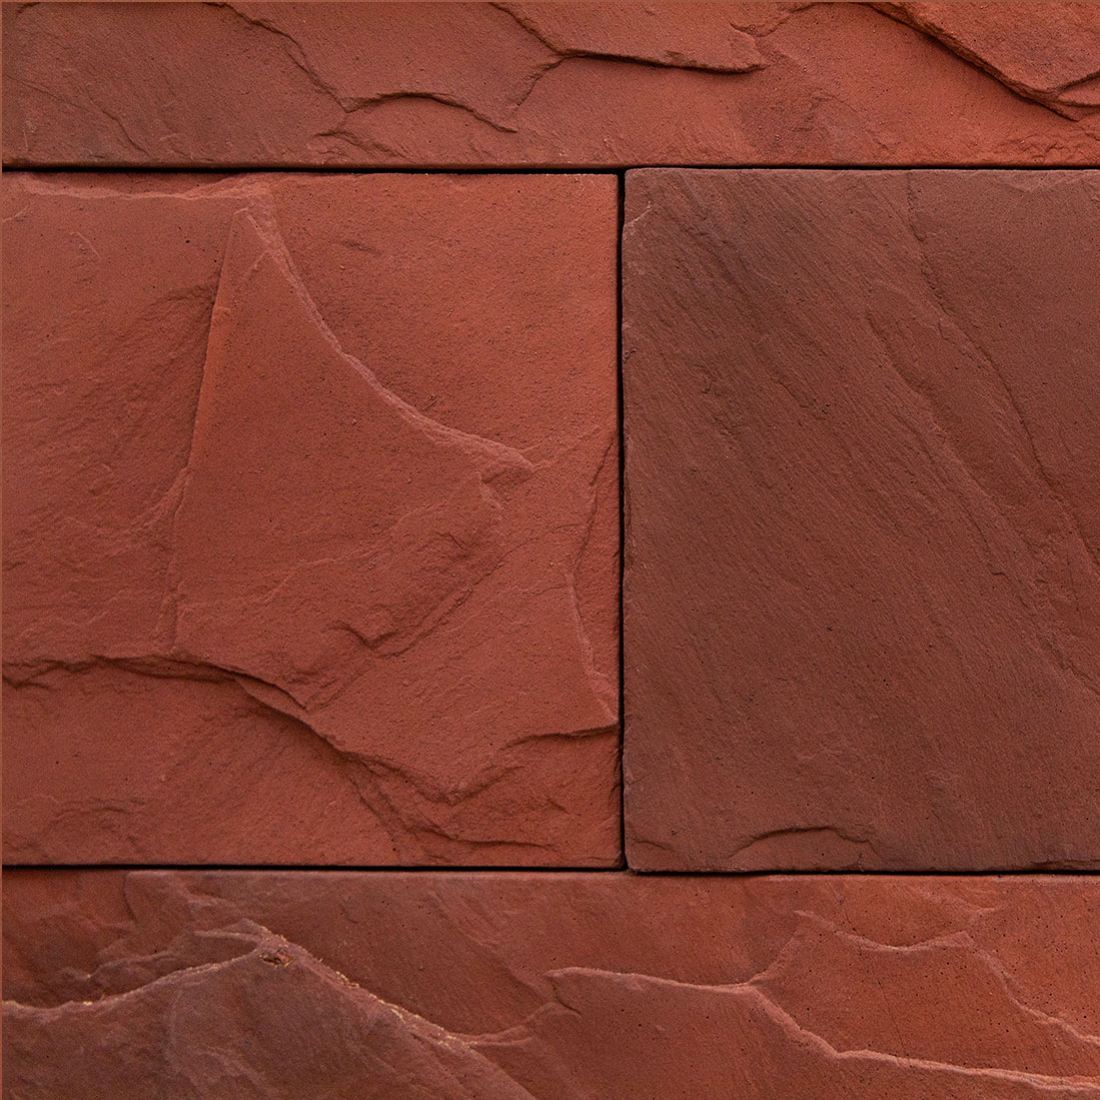 Murs terracotta rouge argileux